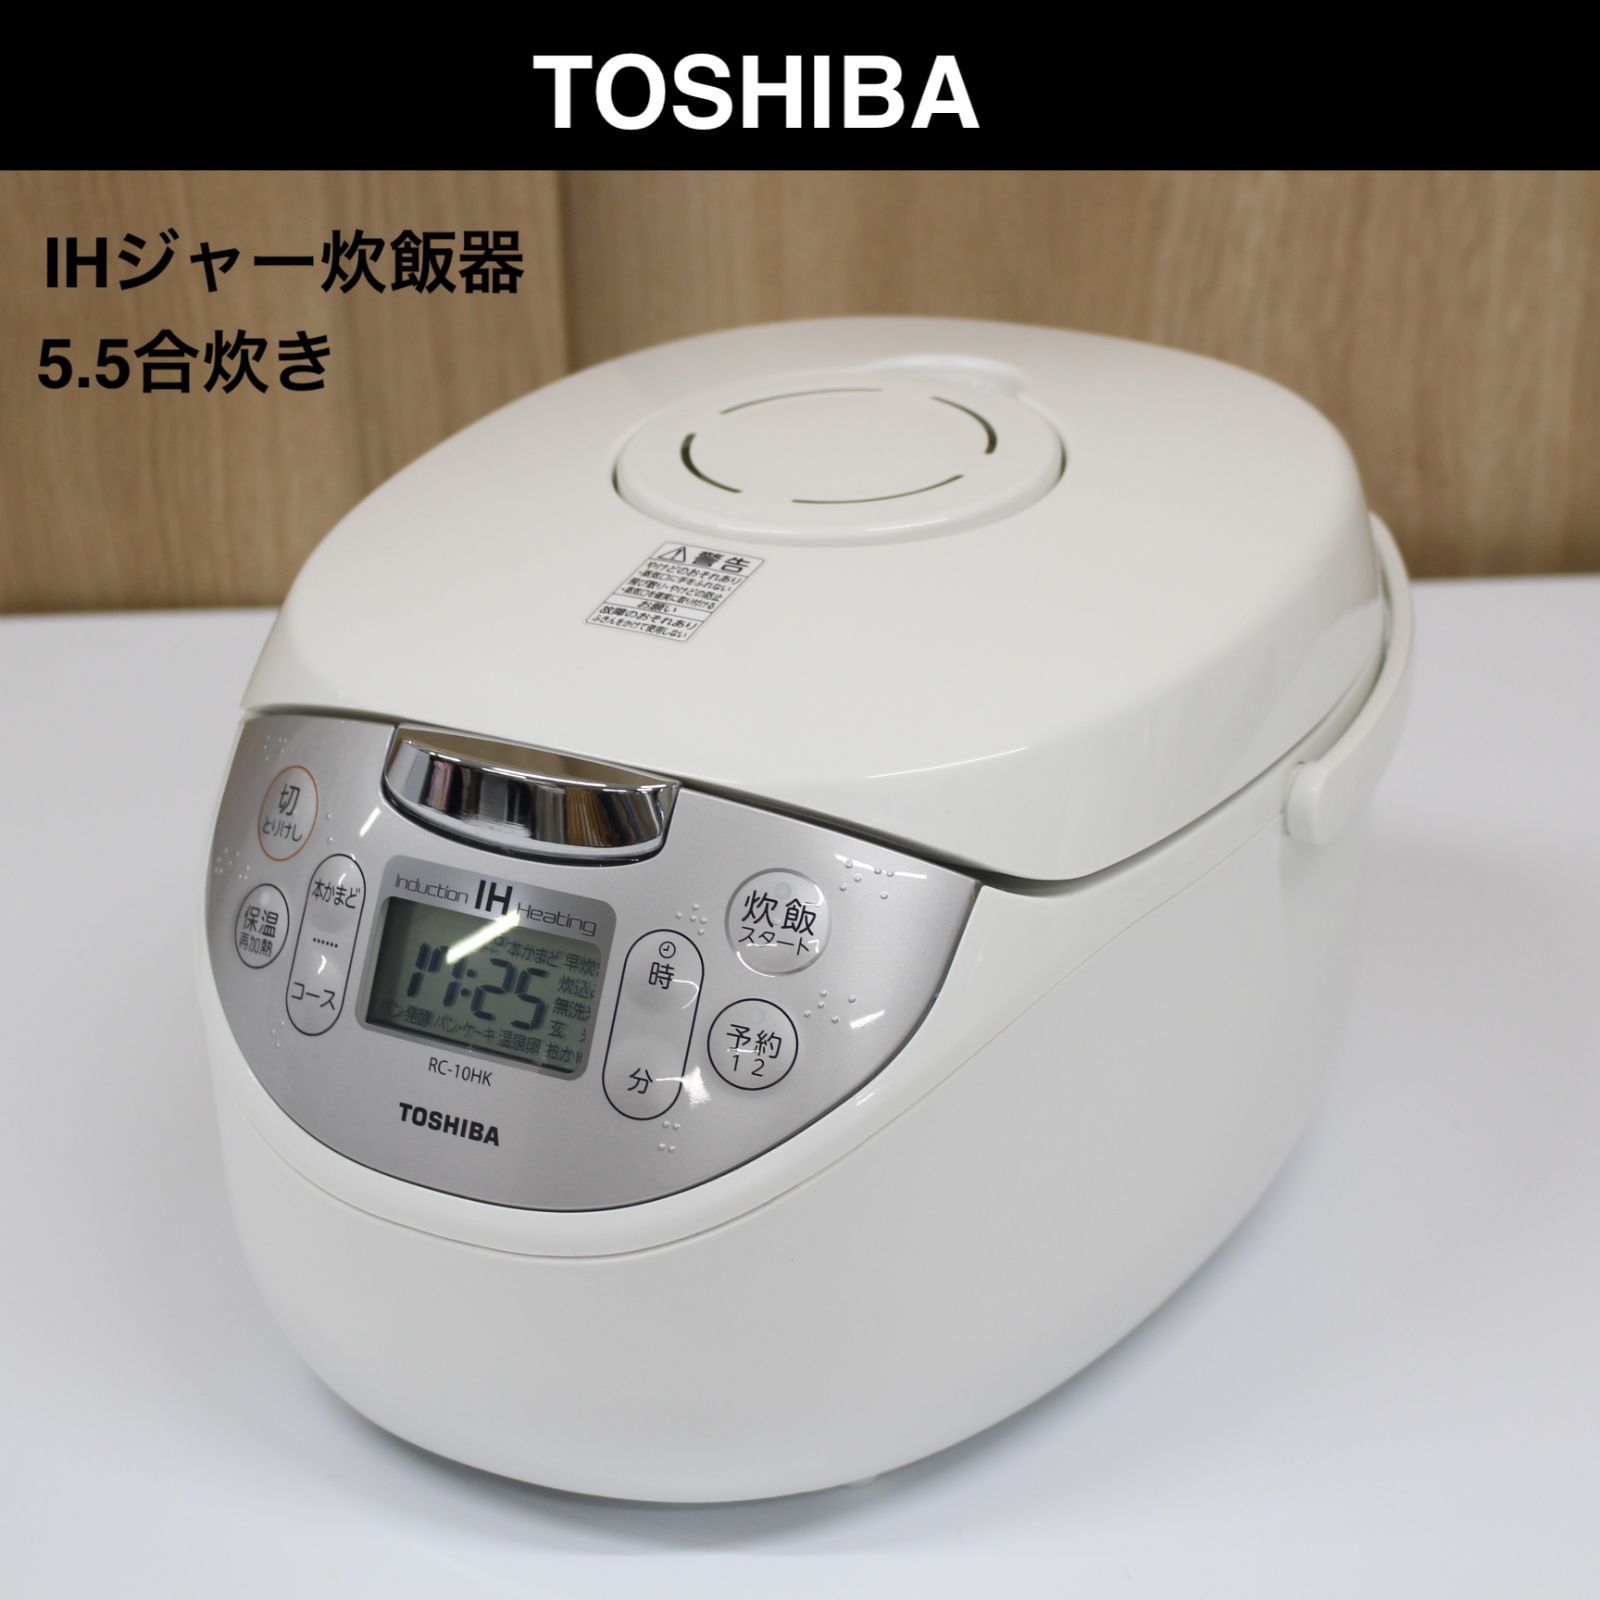 TOSHIBA 炊飯器 3合炊き - 炊飯器・餅つき機